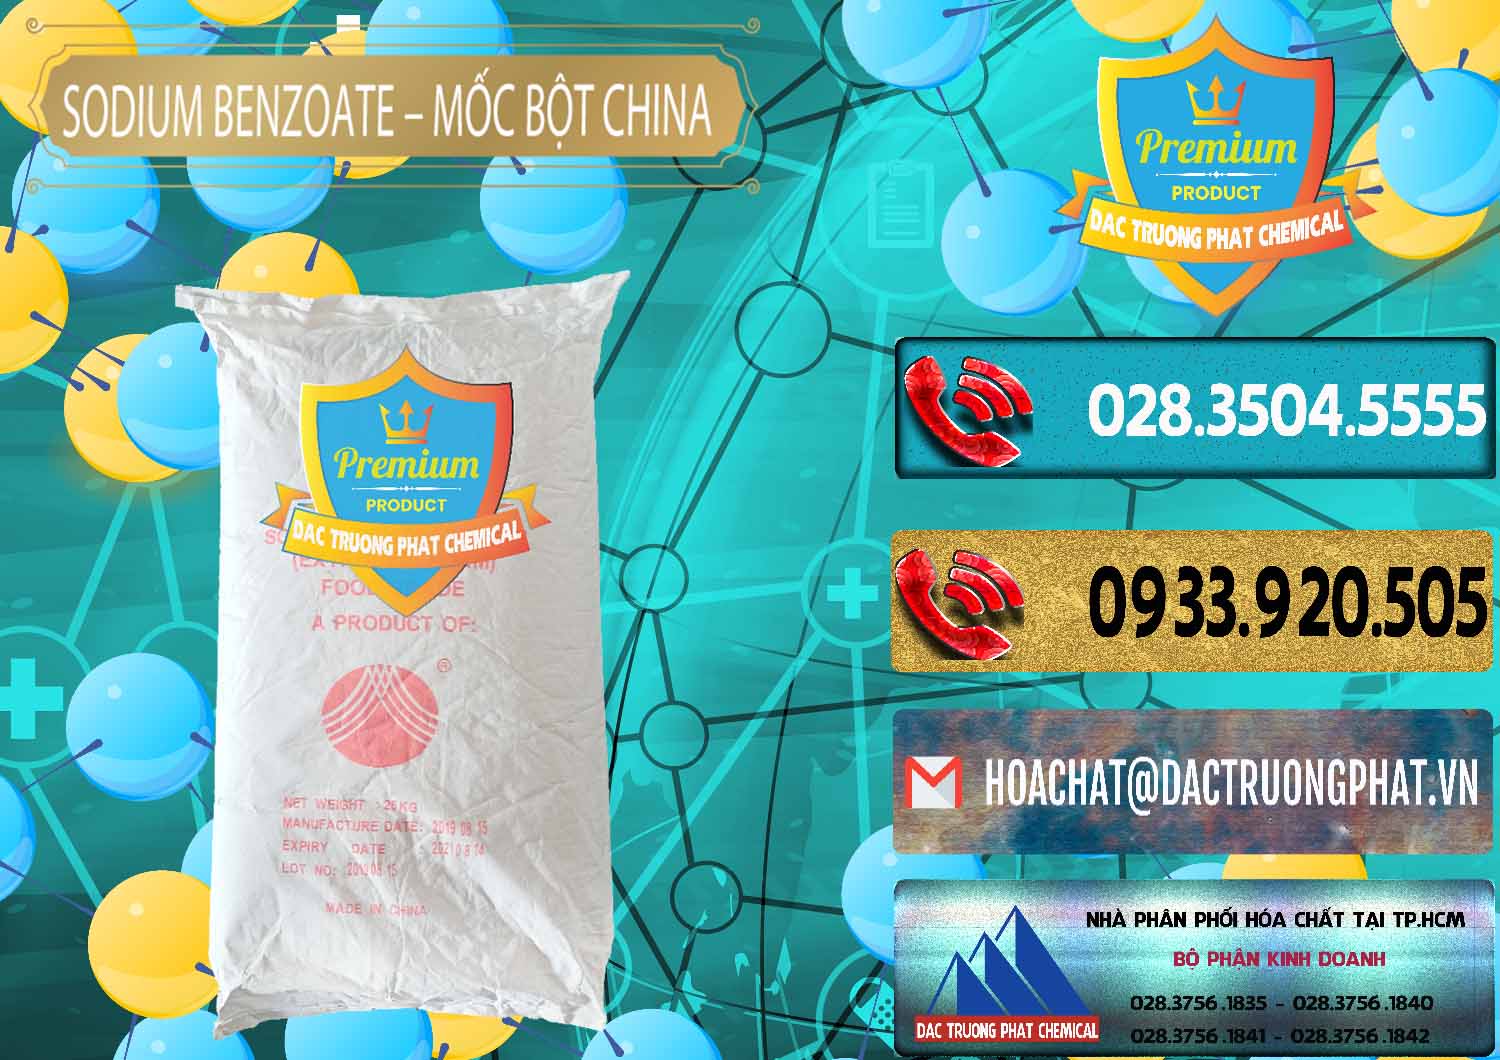 Cty chuyên kinh doanh _ bán Sodium Benzoate - Mốc Bột Chữ Cam Food Grade Trung Quốc China - 0135 - Cty chuyên bán - phân phối hóa chất tại TP.HCM - hoachatdetnhuom.com